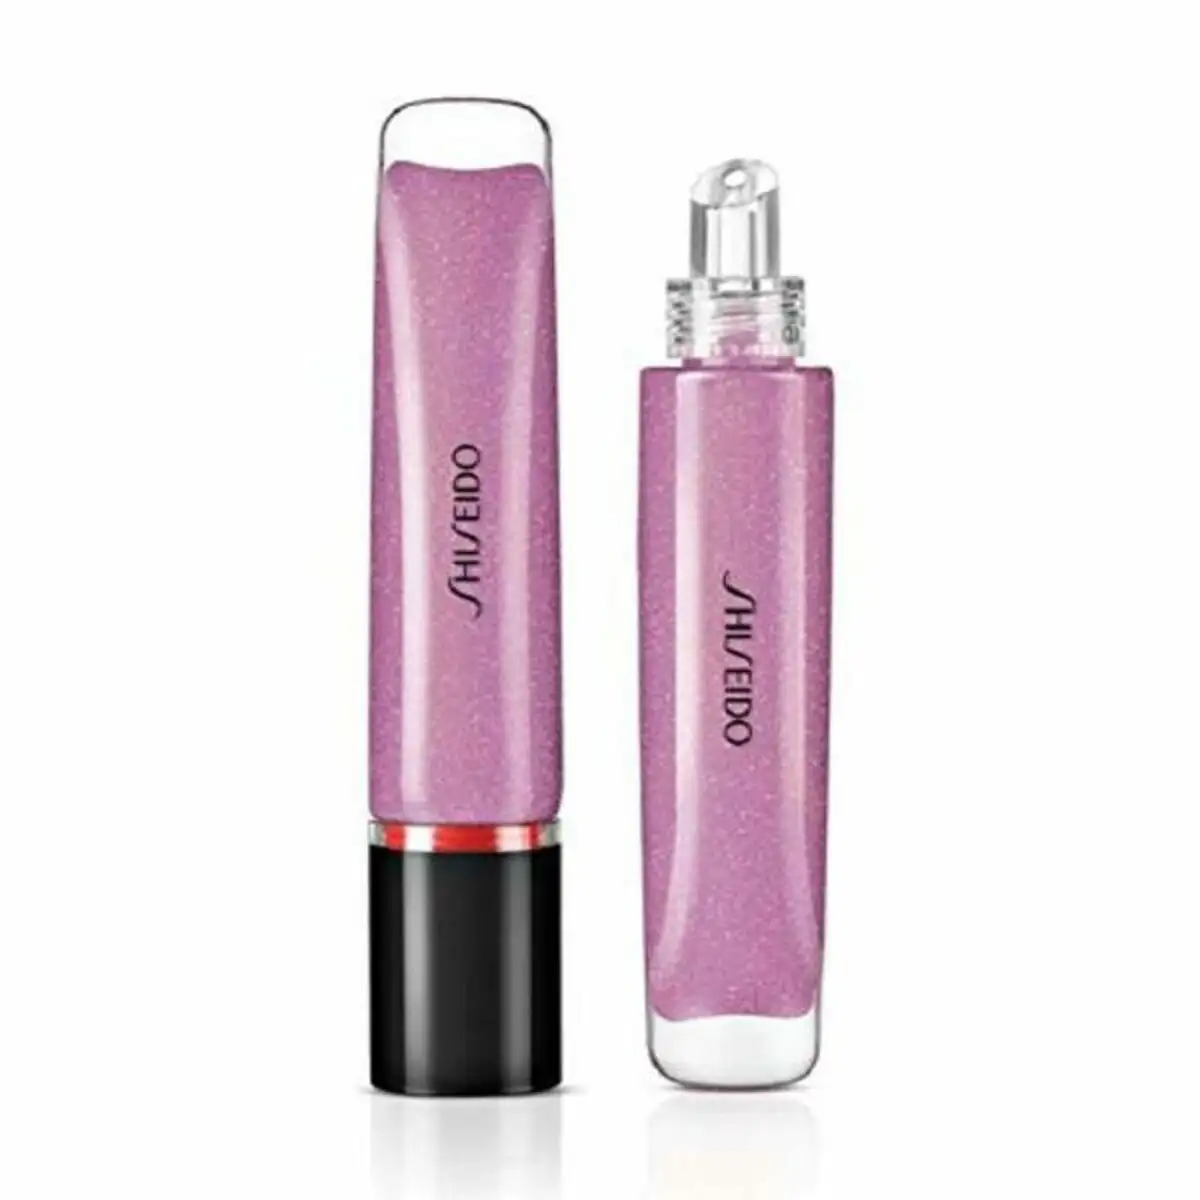 Lip gloss shimmer shiseido 9 ml_8542. DIAYTAR SENEGAL - Où Choisir est un Plaisir. Explorez notre boutique en ligne et choisissez parmi des produits de qualité qui satisferont vos besoins et vos goûts.